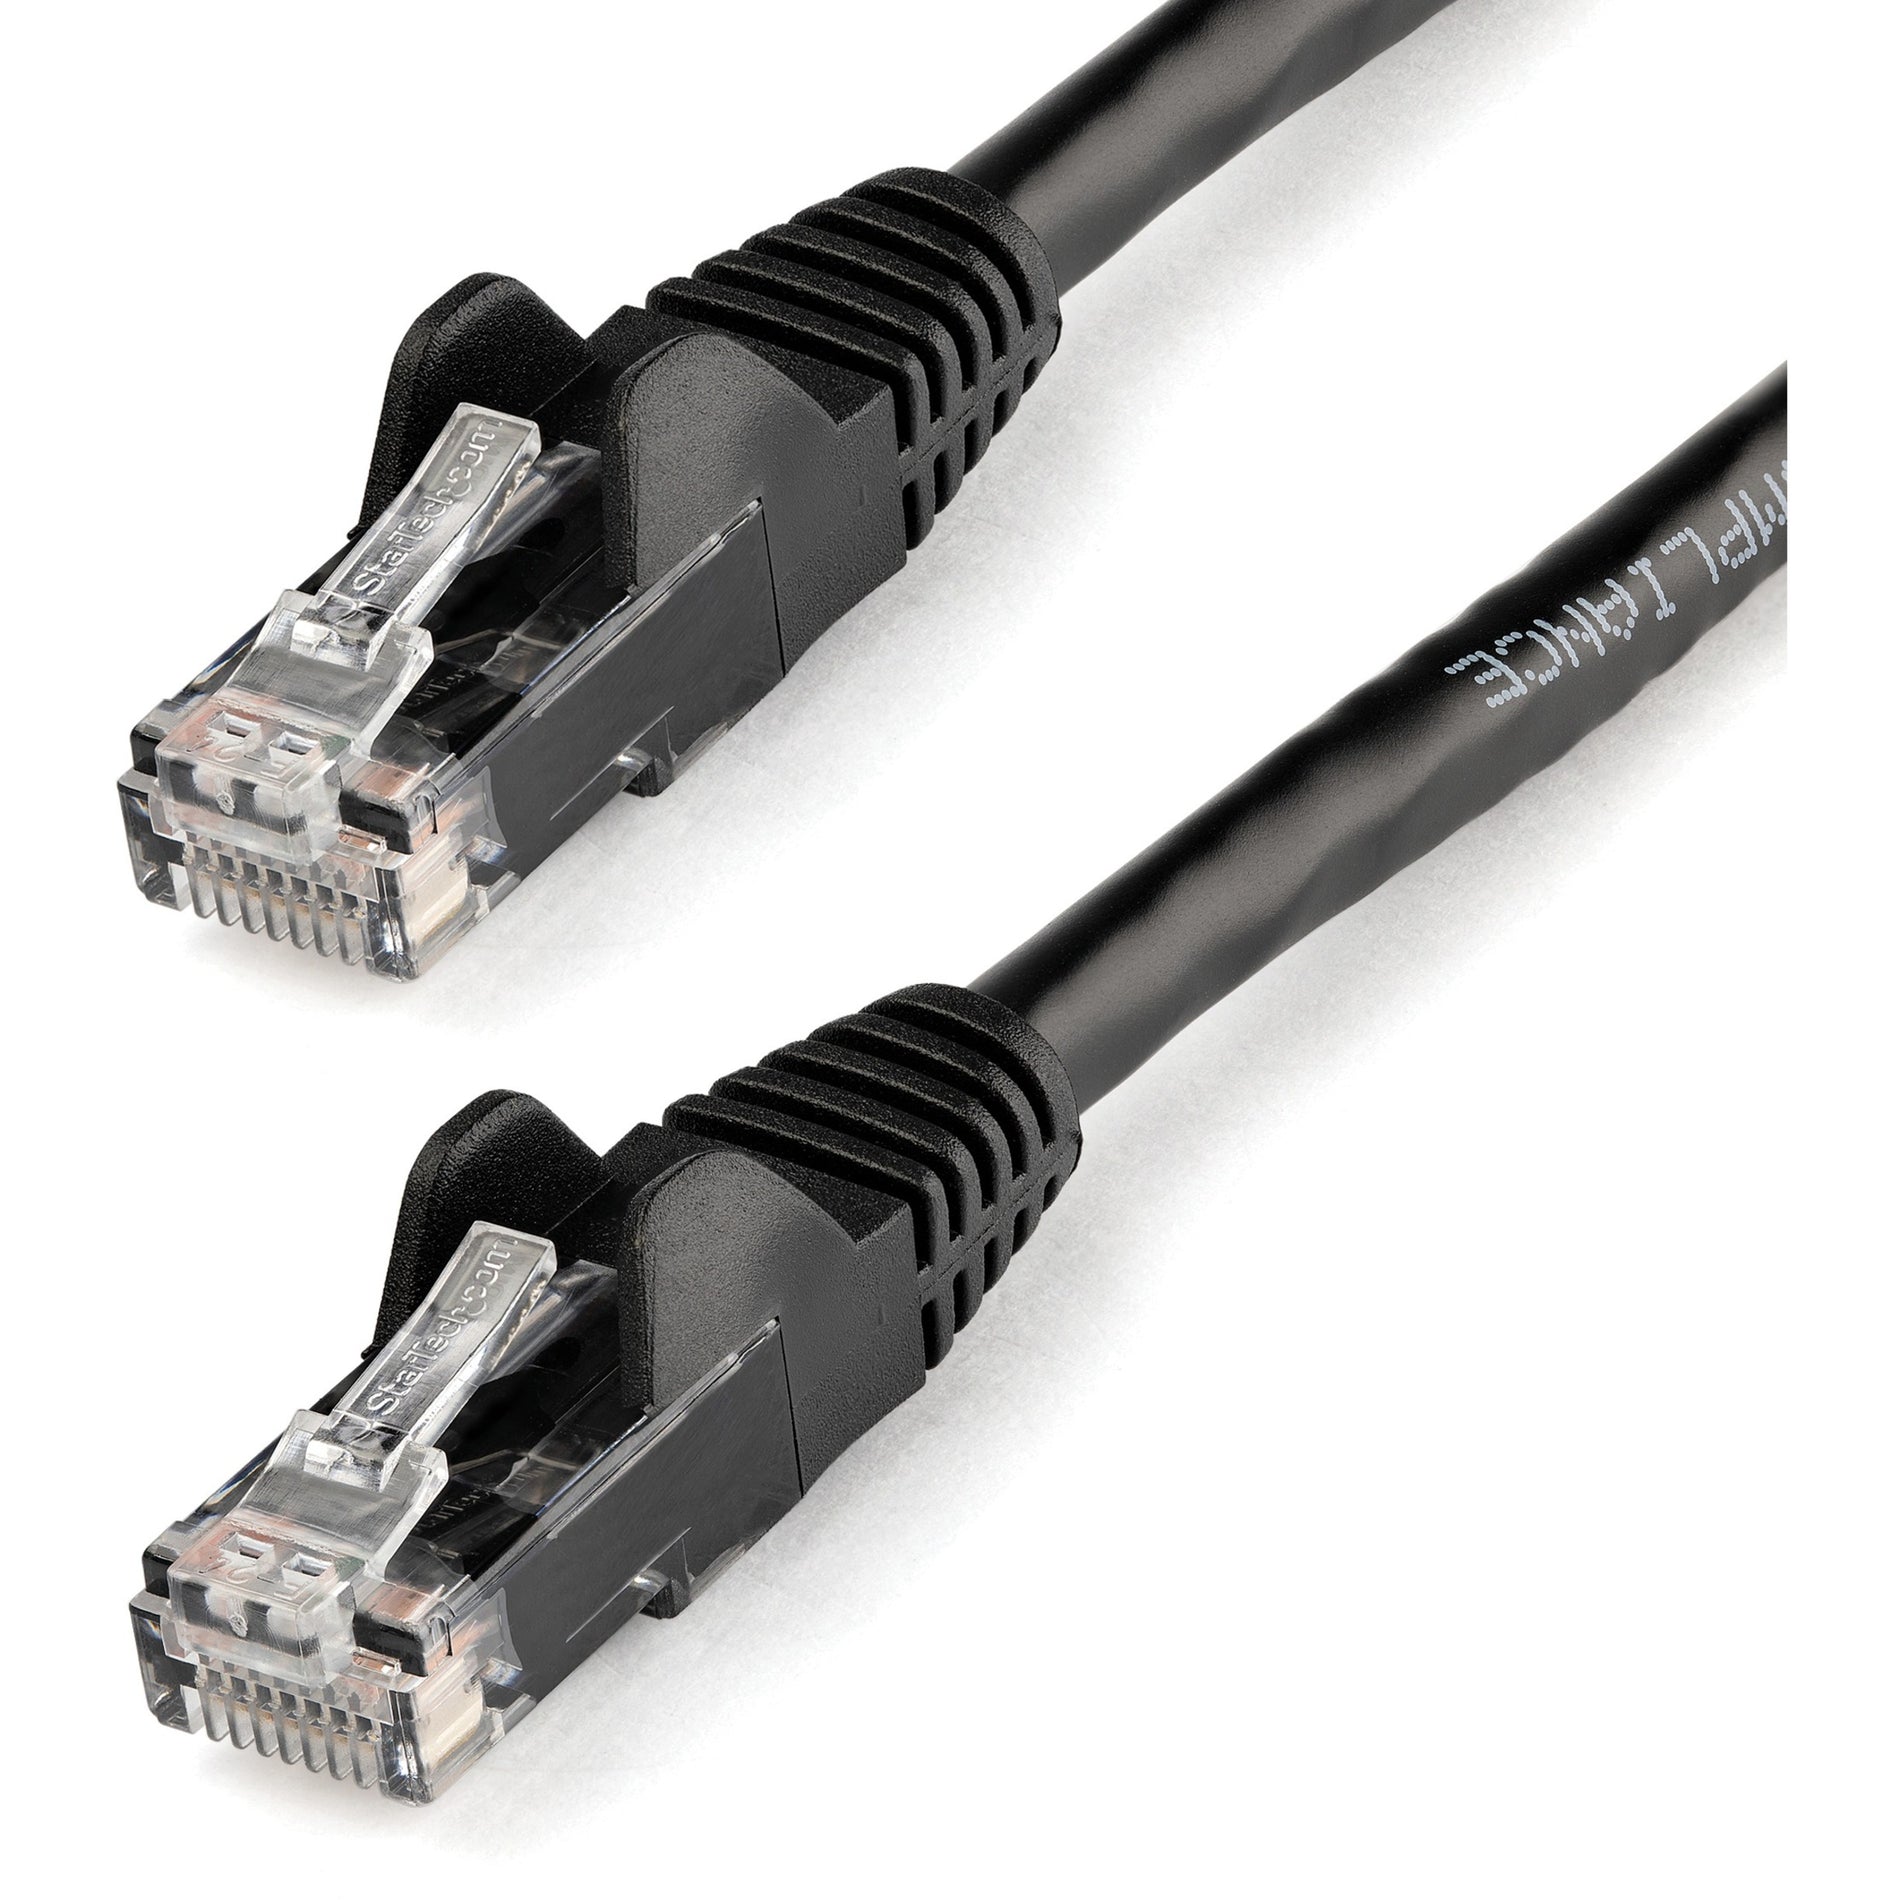 StarTech.com N6PATCH14BK Cat6 Patch Cable, 14ft Black Ethernet Cable, Snagless RJ45 Connectors